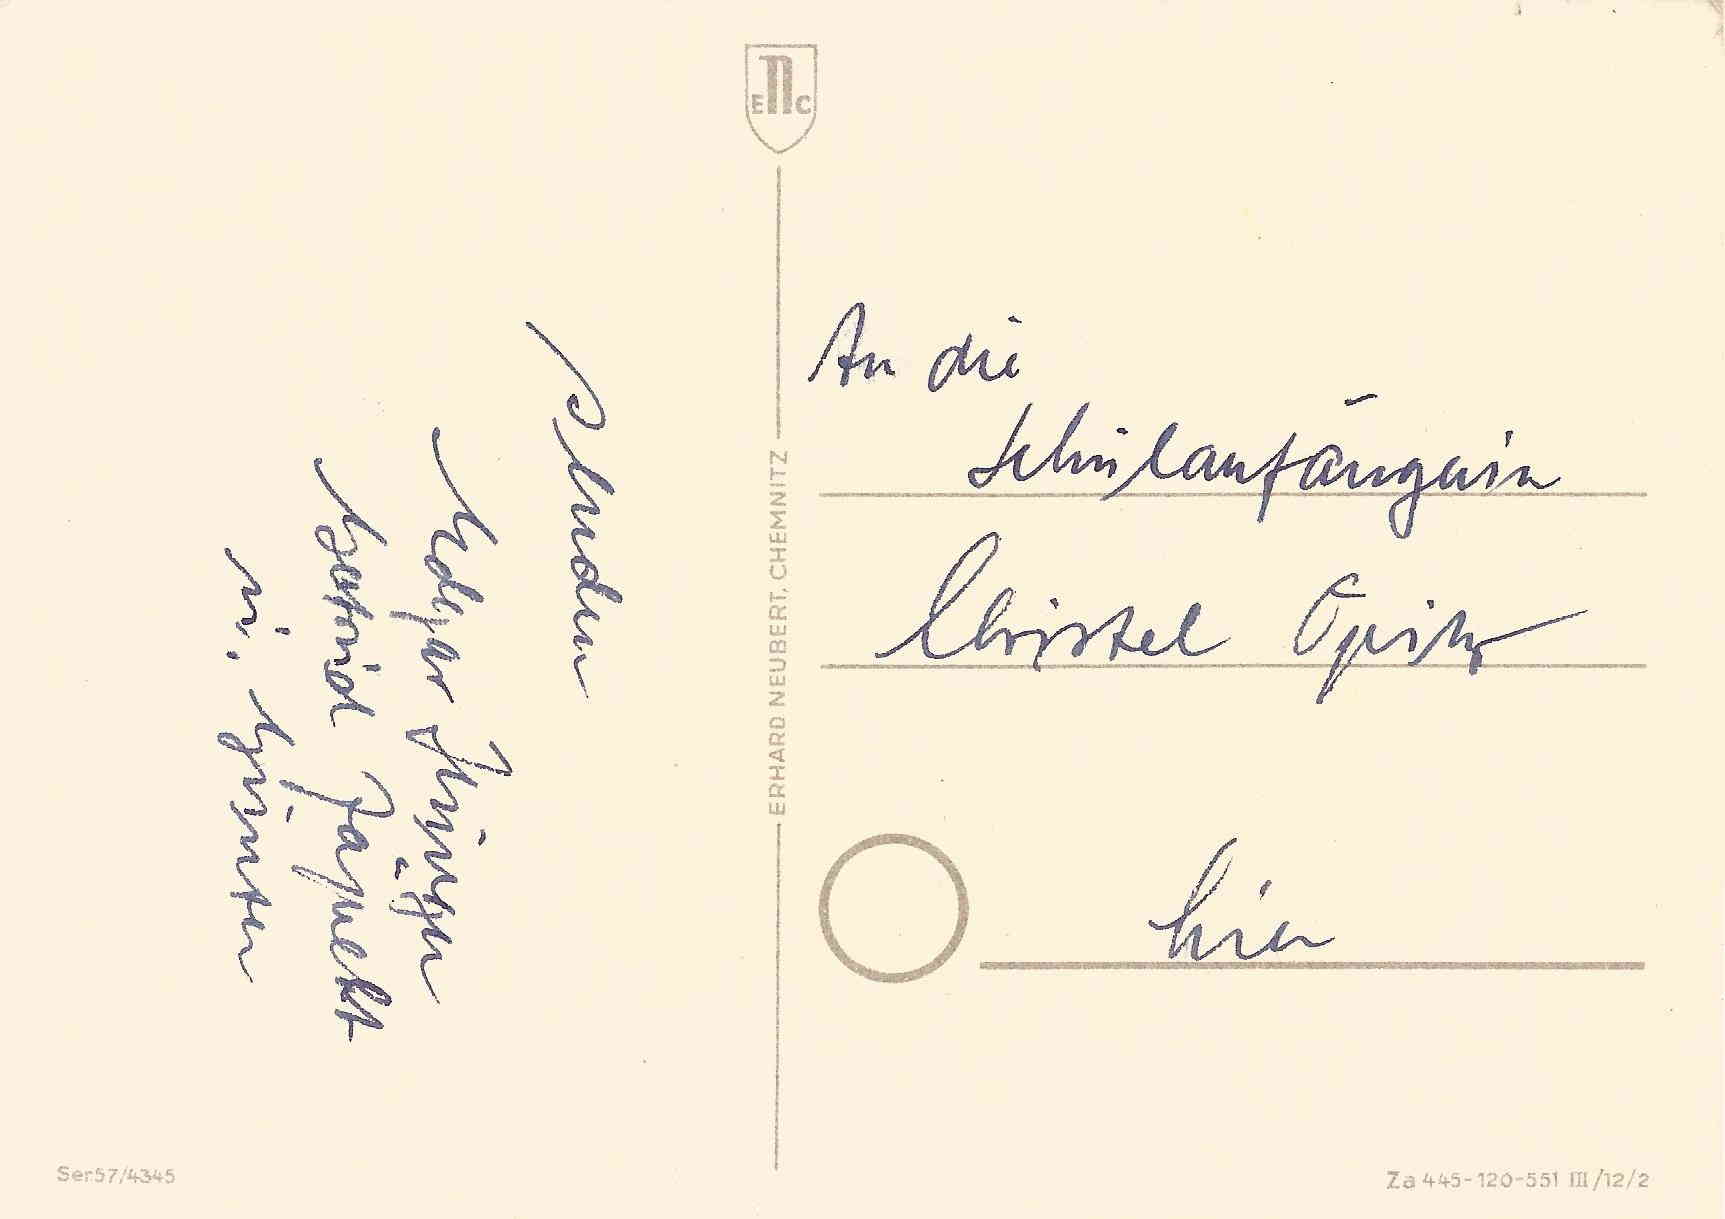 Postkarte aus der ehem. DDR (Rckseite)